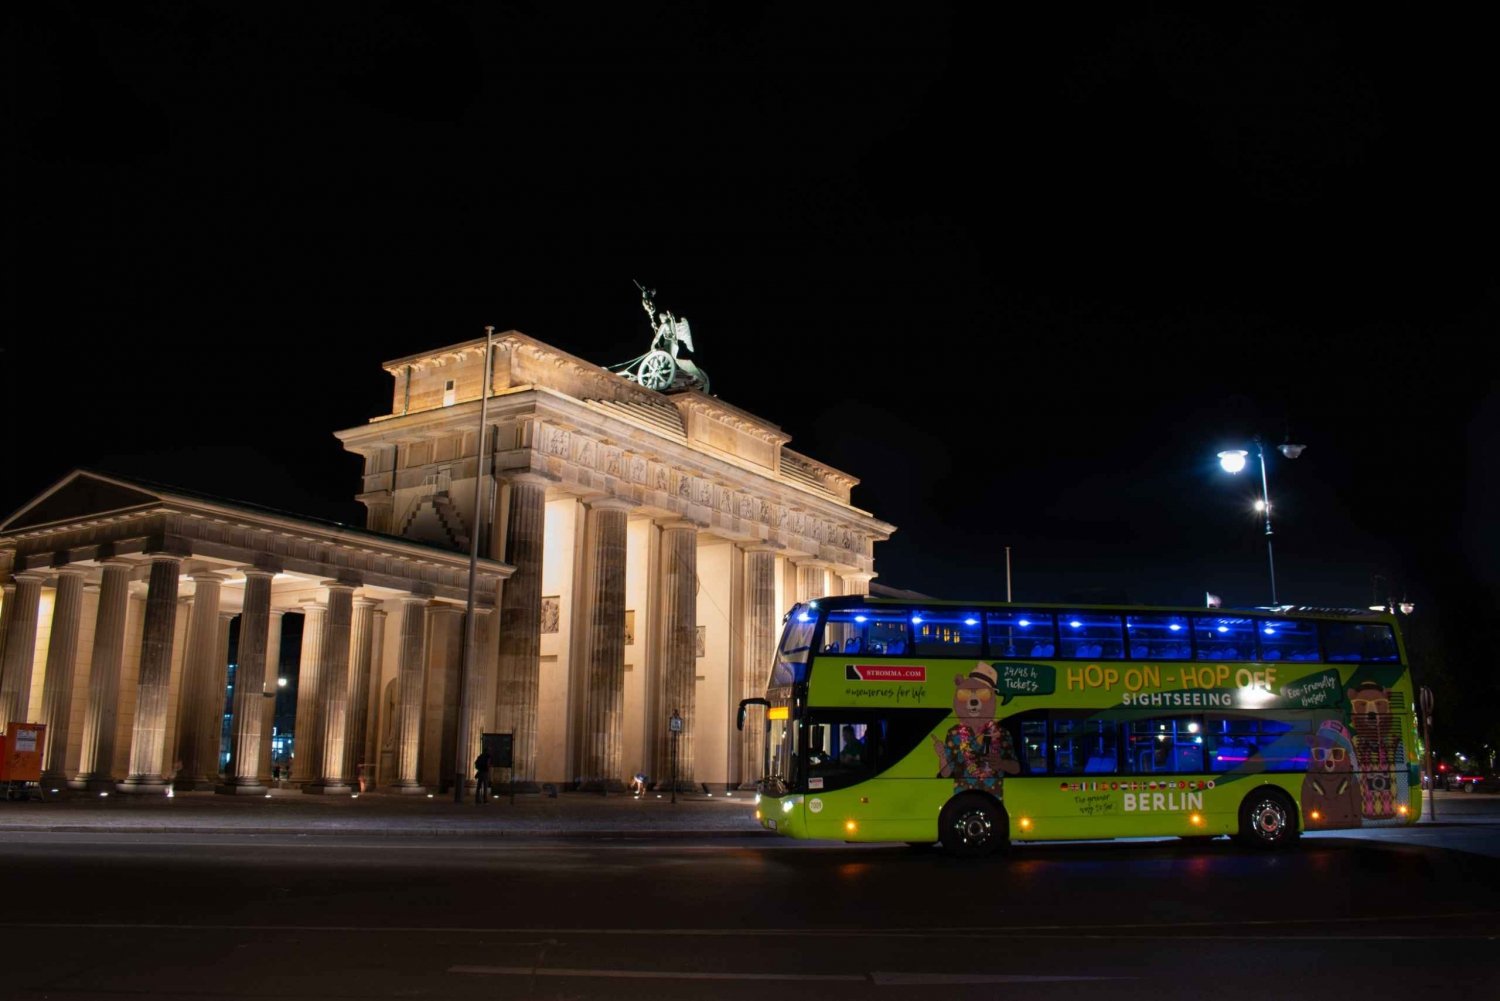 Berliini: Berlin: Iltakierros bussilla ja live-kommentointi